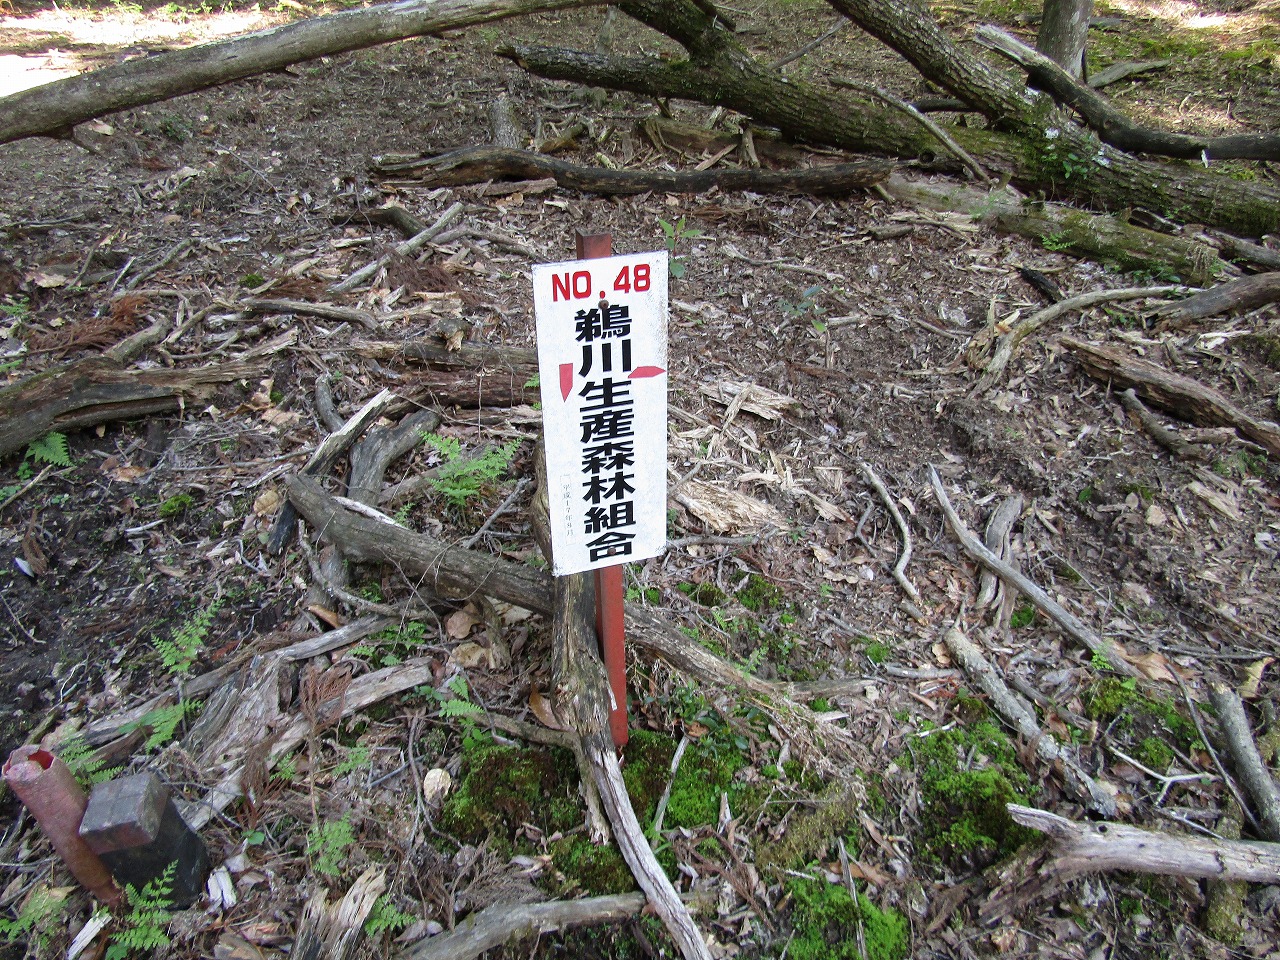 鵜川生産森林組合の看板、N0,48